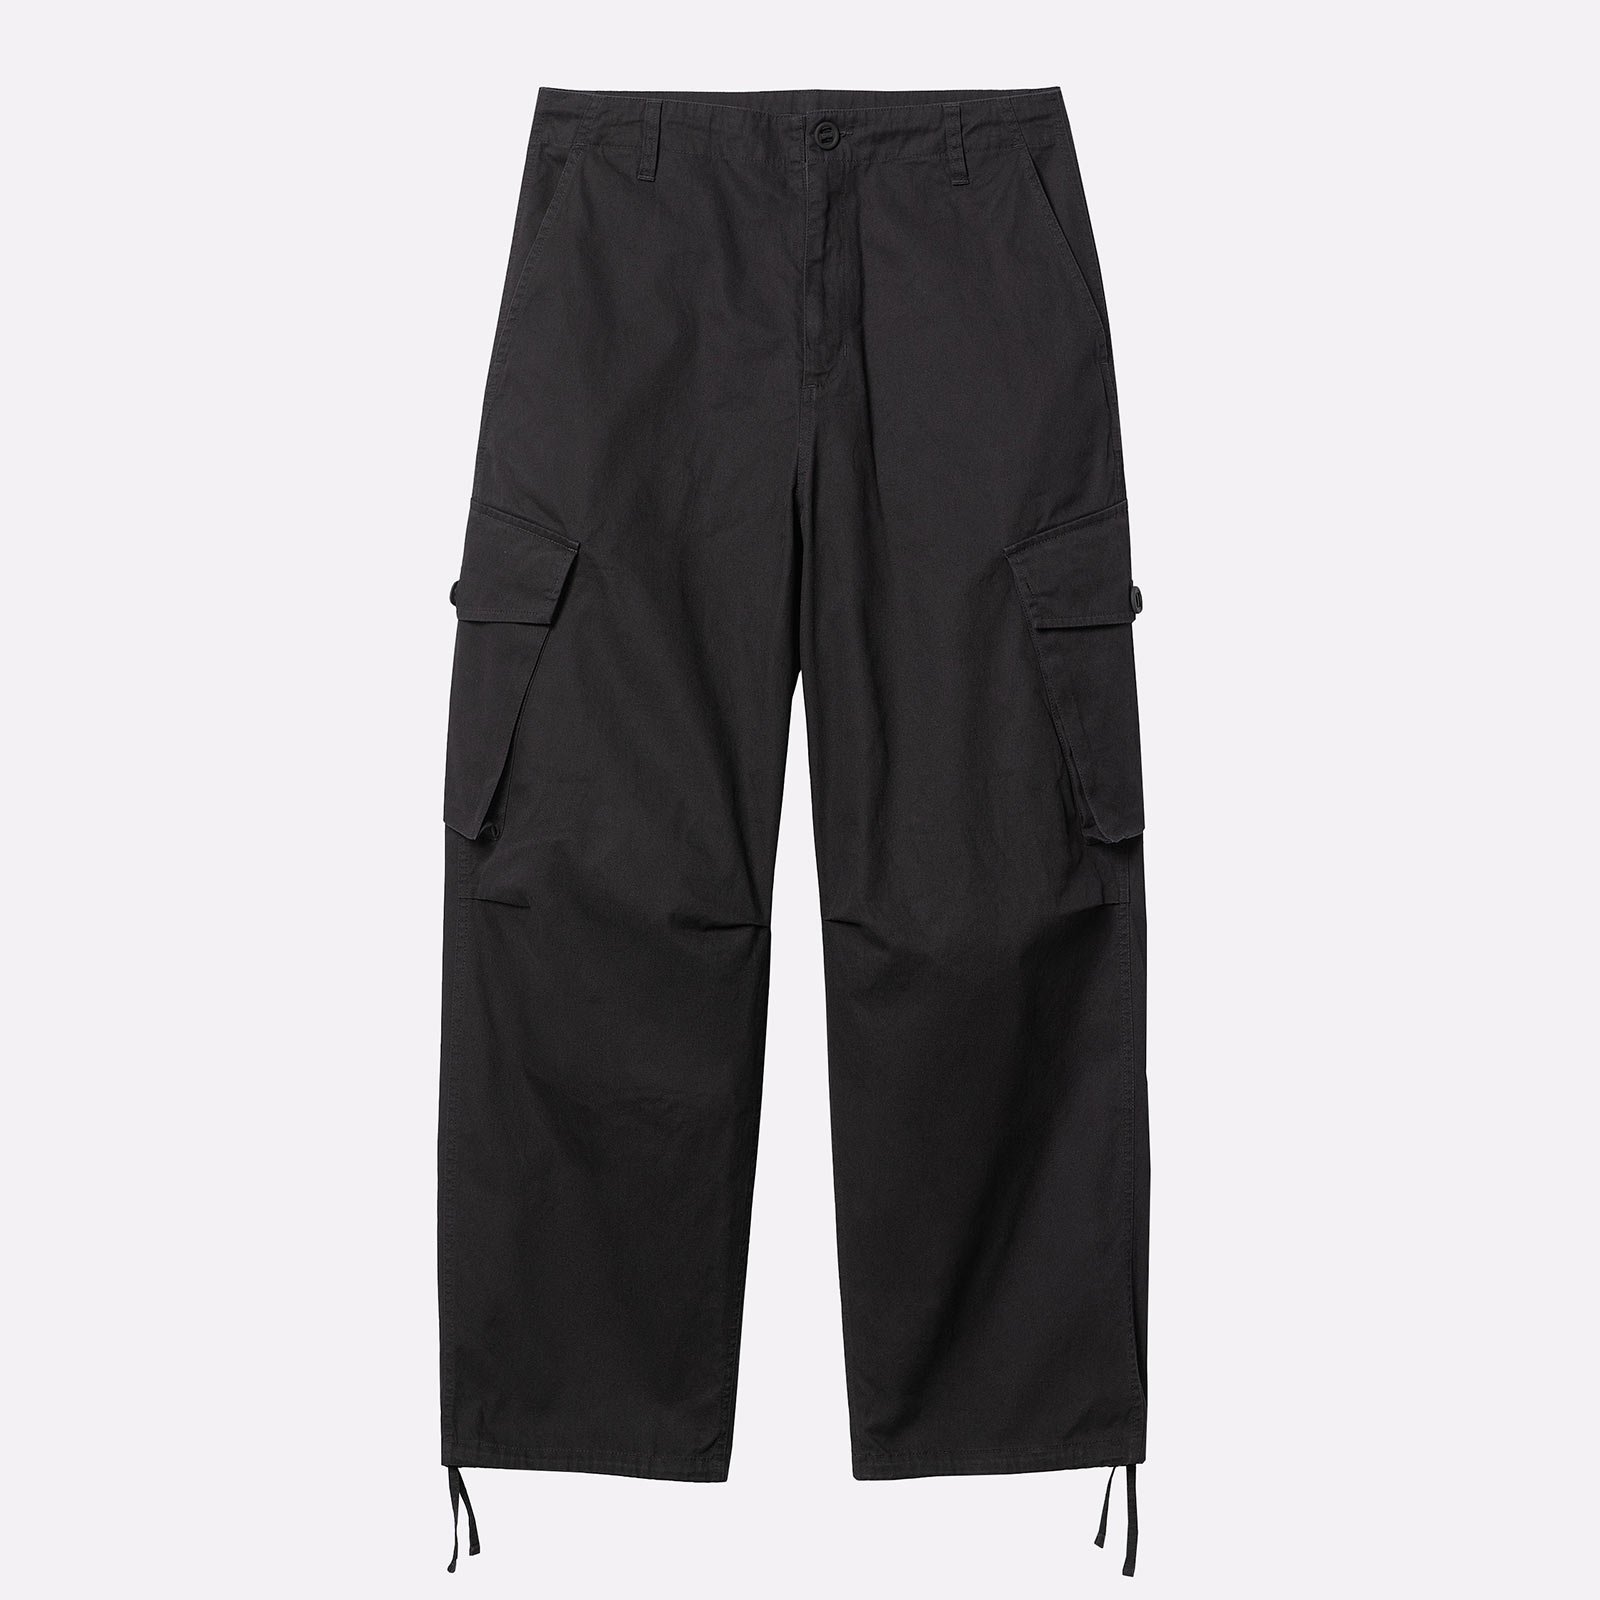 мужские брюки Carhartt WIP Unity Pant  (I032983-black)  - цена, описание, фото 1